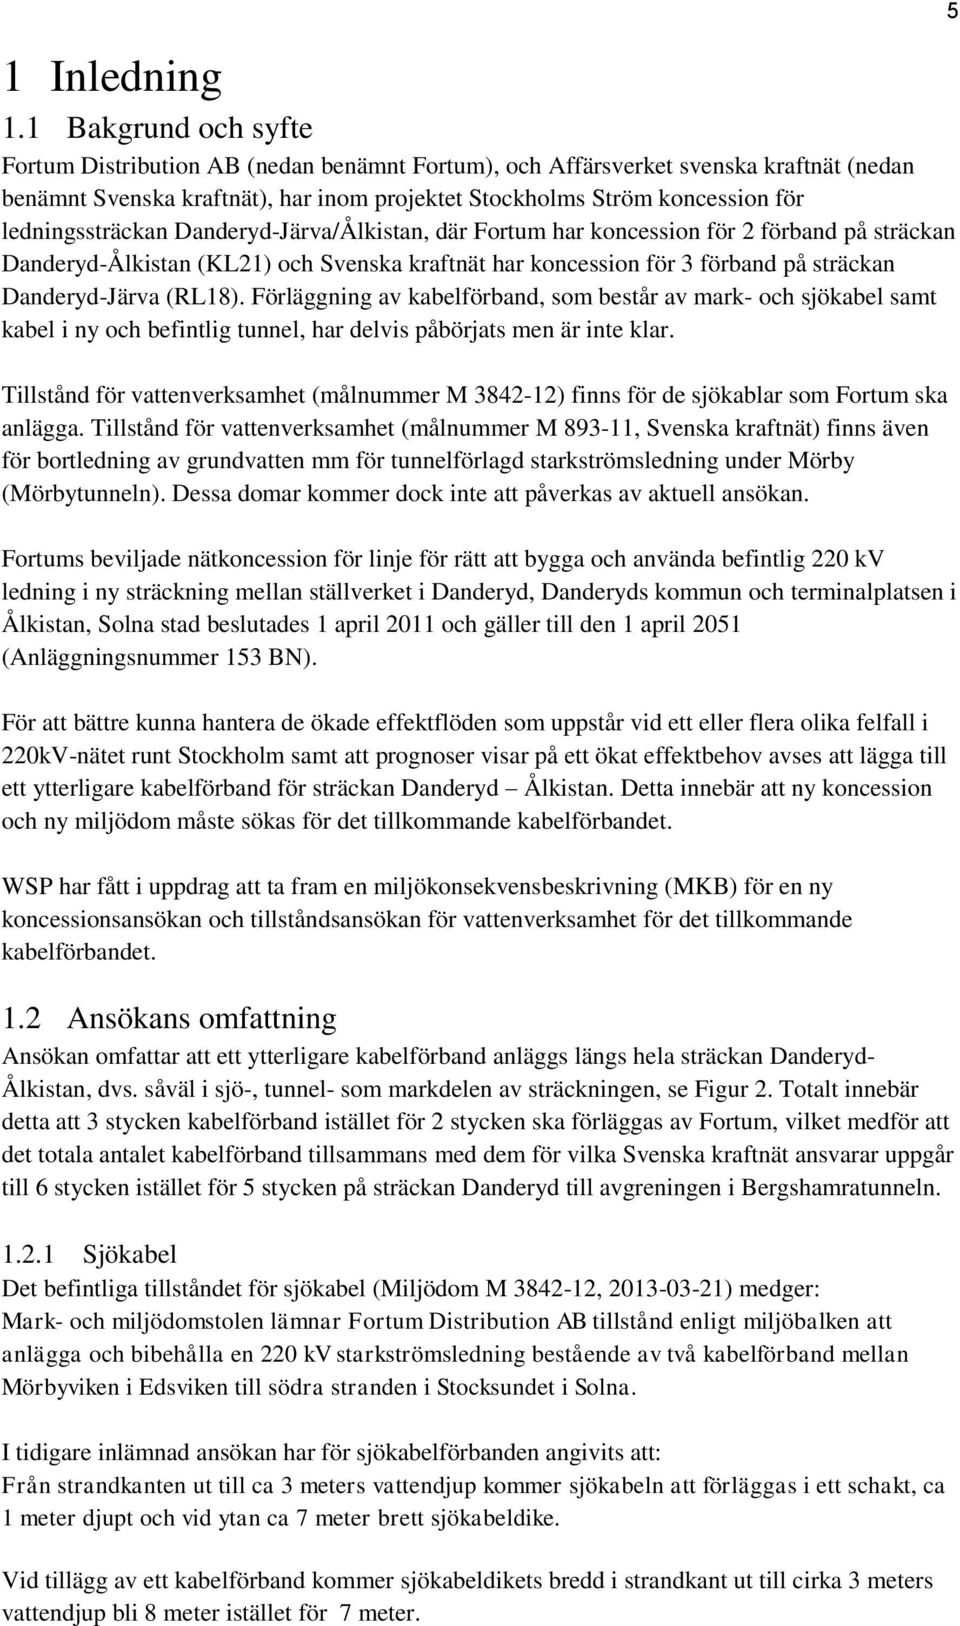 ledningssträckan Danderyd-Järva/Ålkistan, där Fortum har koncession för 2 förband på sträckan Danderyd-Ålkistan (KL21) och Svenska kraftnät har koncession för 3 förband på sträckan Danderyd-Järva